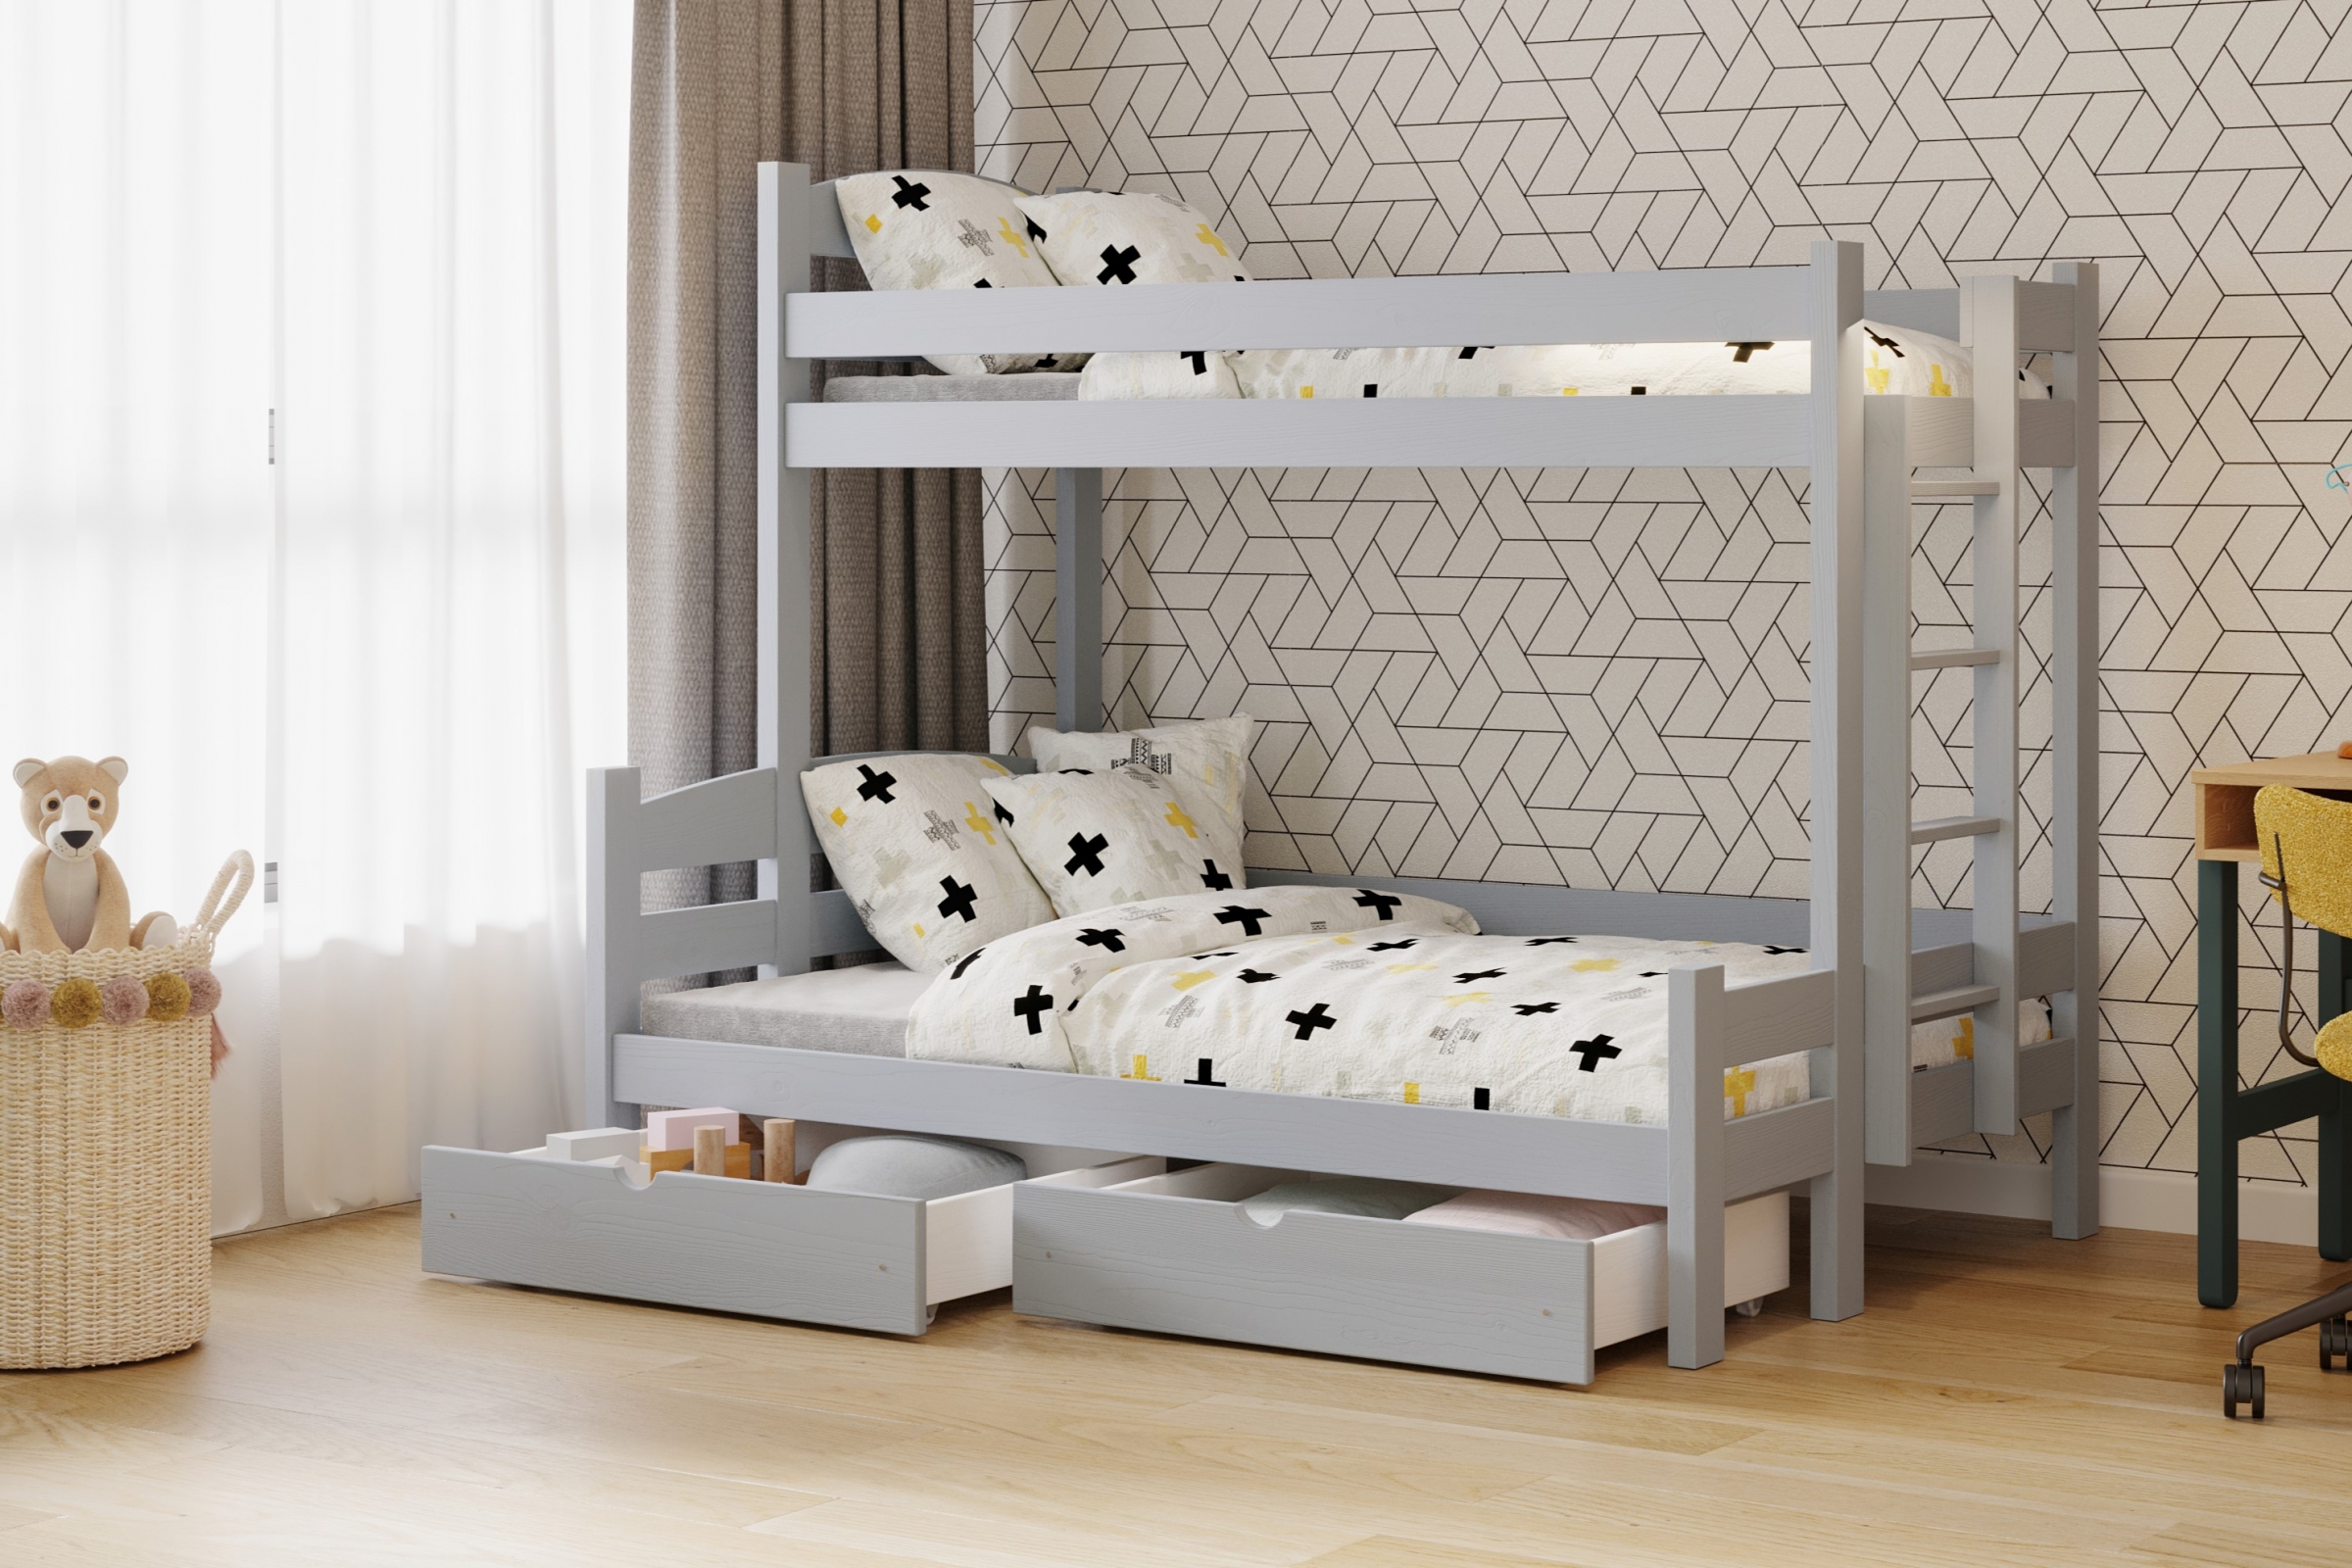 Lovic emeletes ágy, fiókokkal, jobb oldali - 90x200 cm/120x200 cm - szürke Emeletes ágy fiokokkal Lovic - szürke - aranzacja